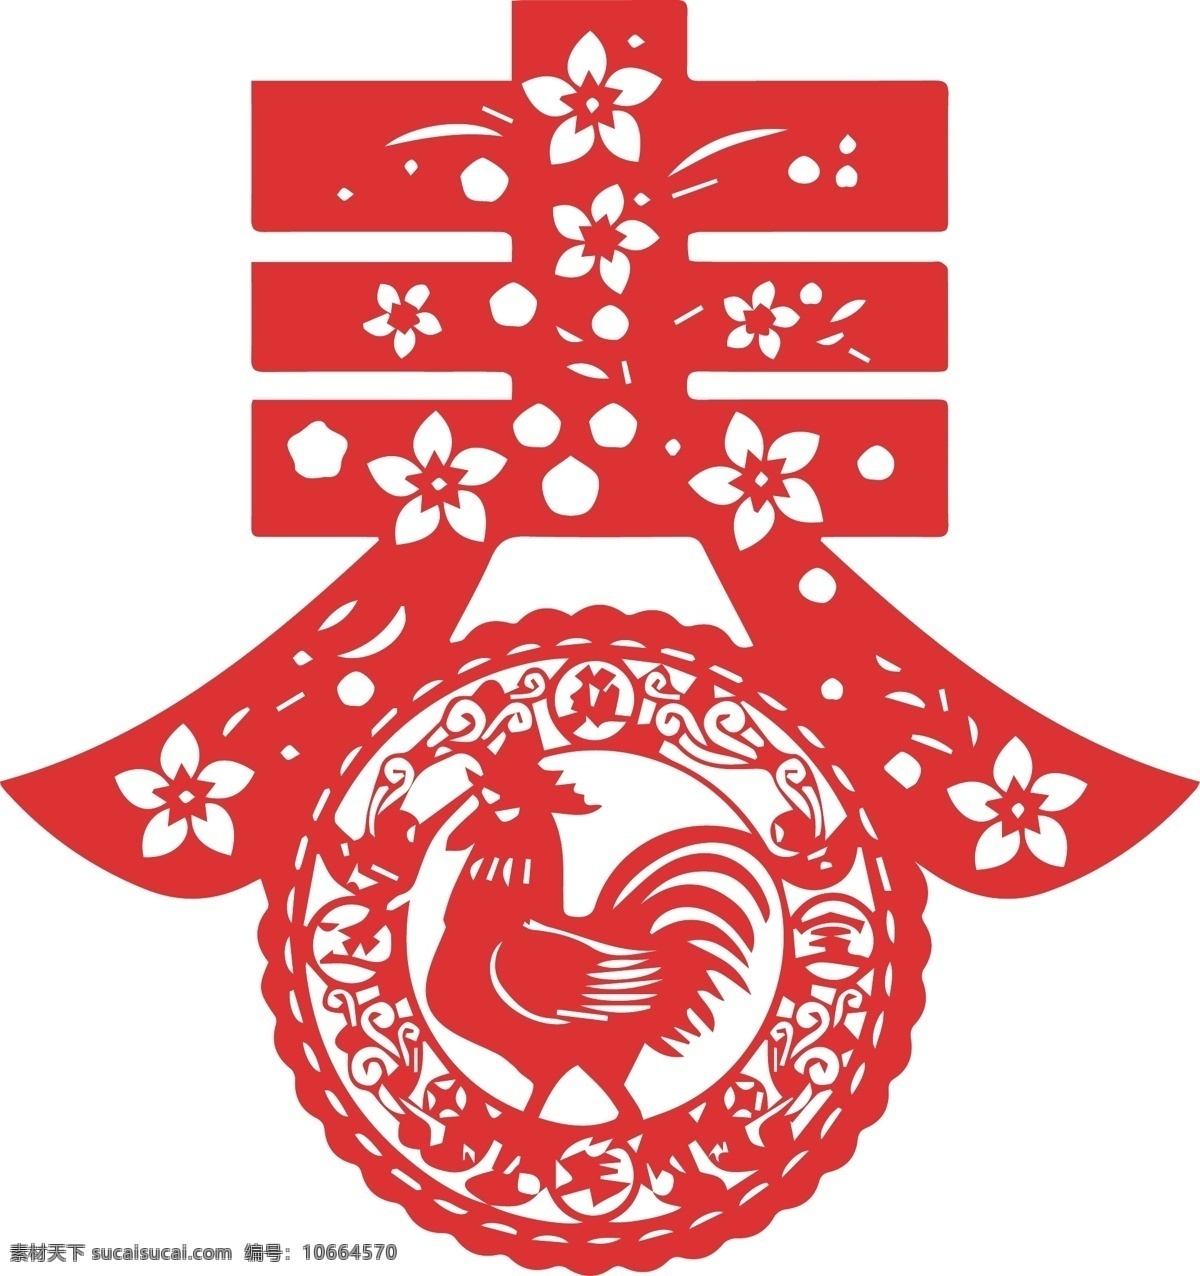 鸡年 新春 春节 窗花 字体 文化艺术 节日庆祝